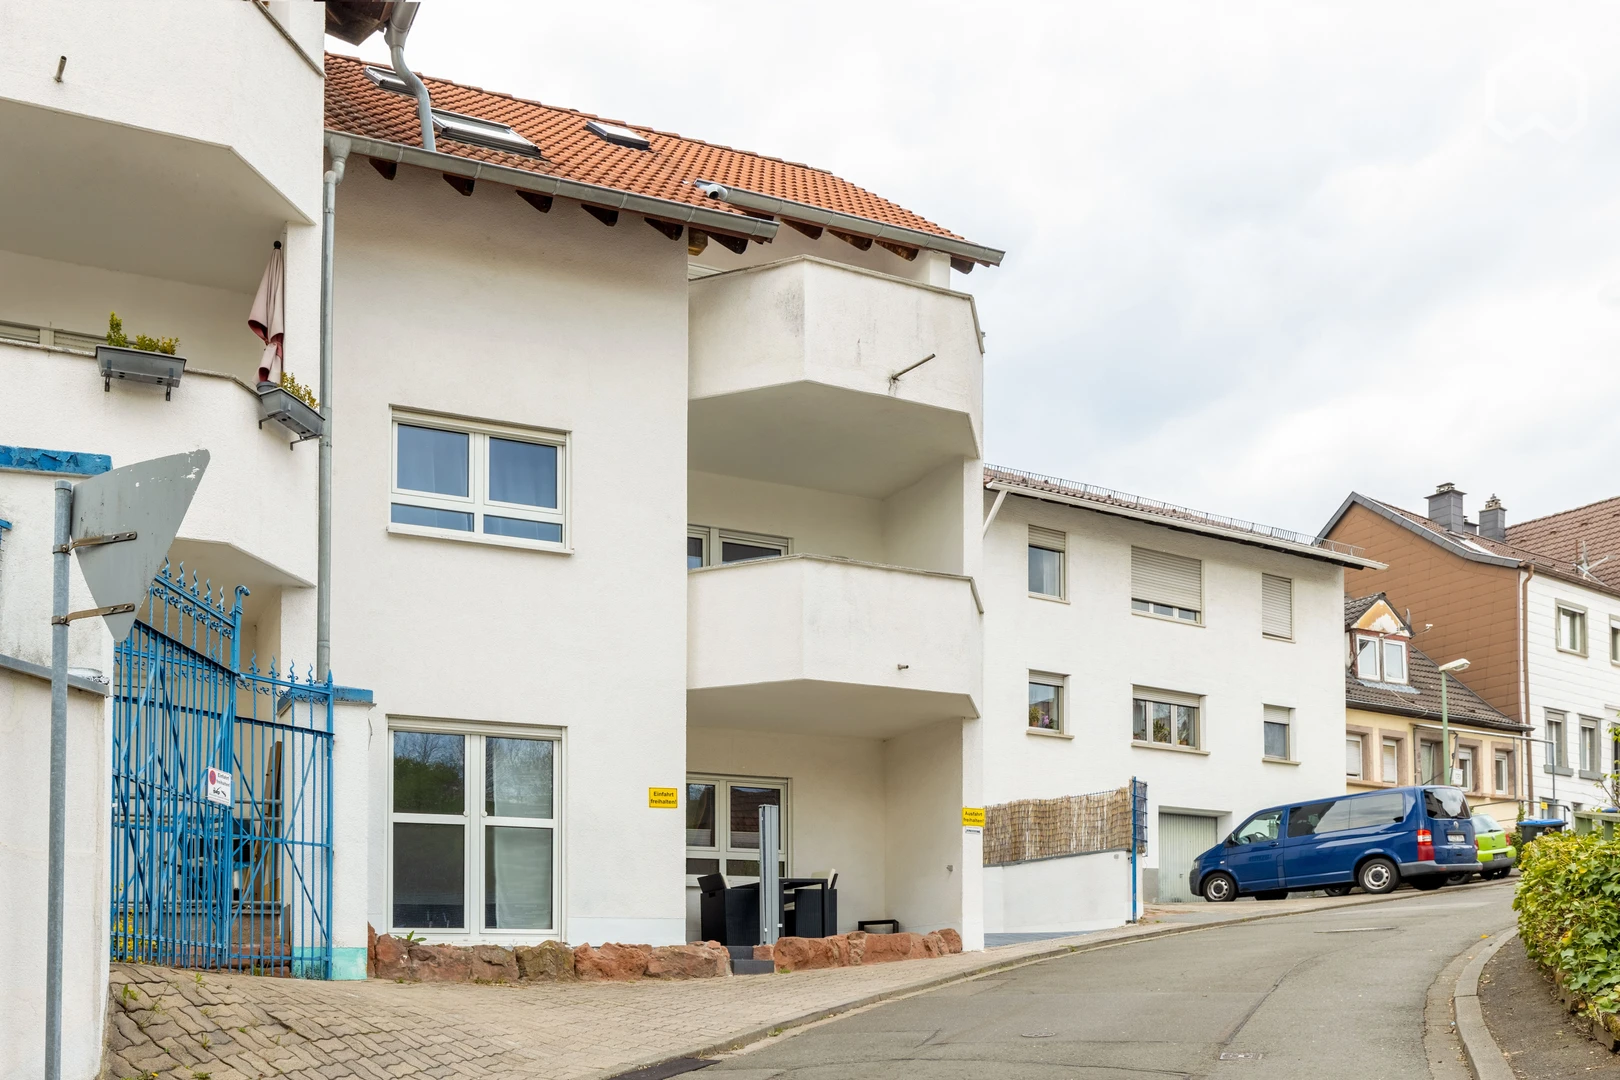 Alquiler de habitación en piso compartido en Kaiserslautern